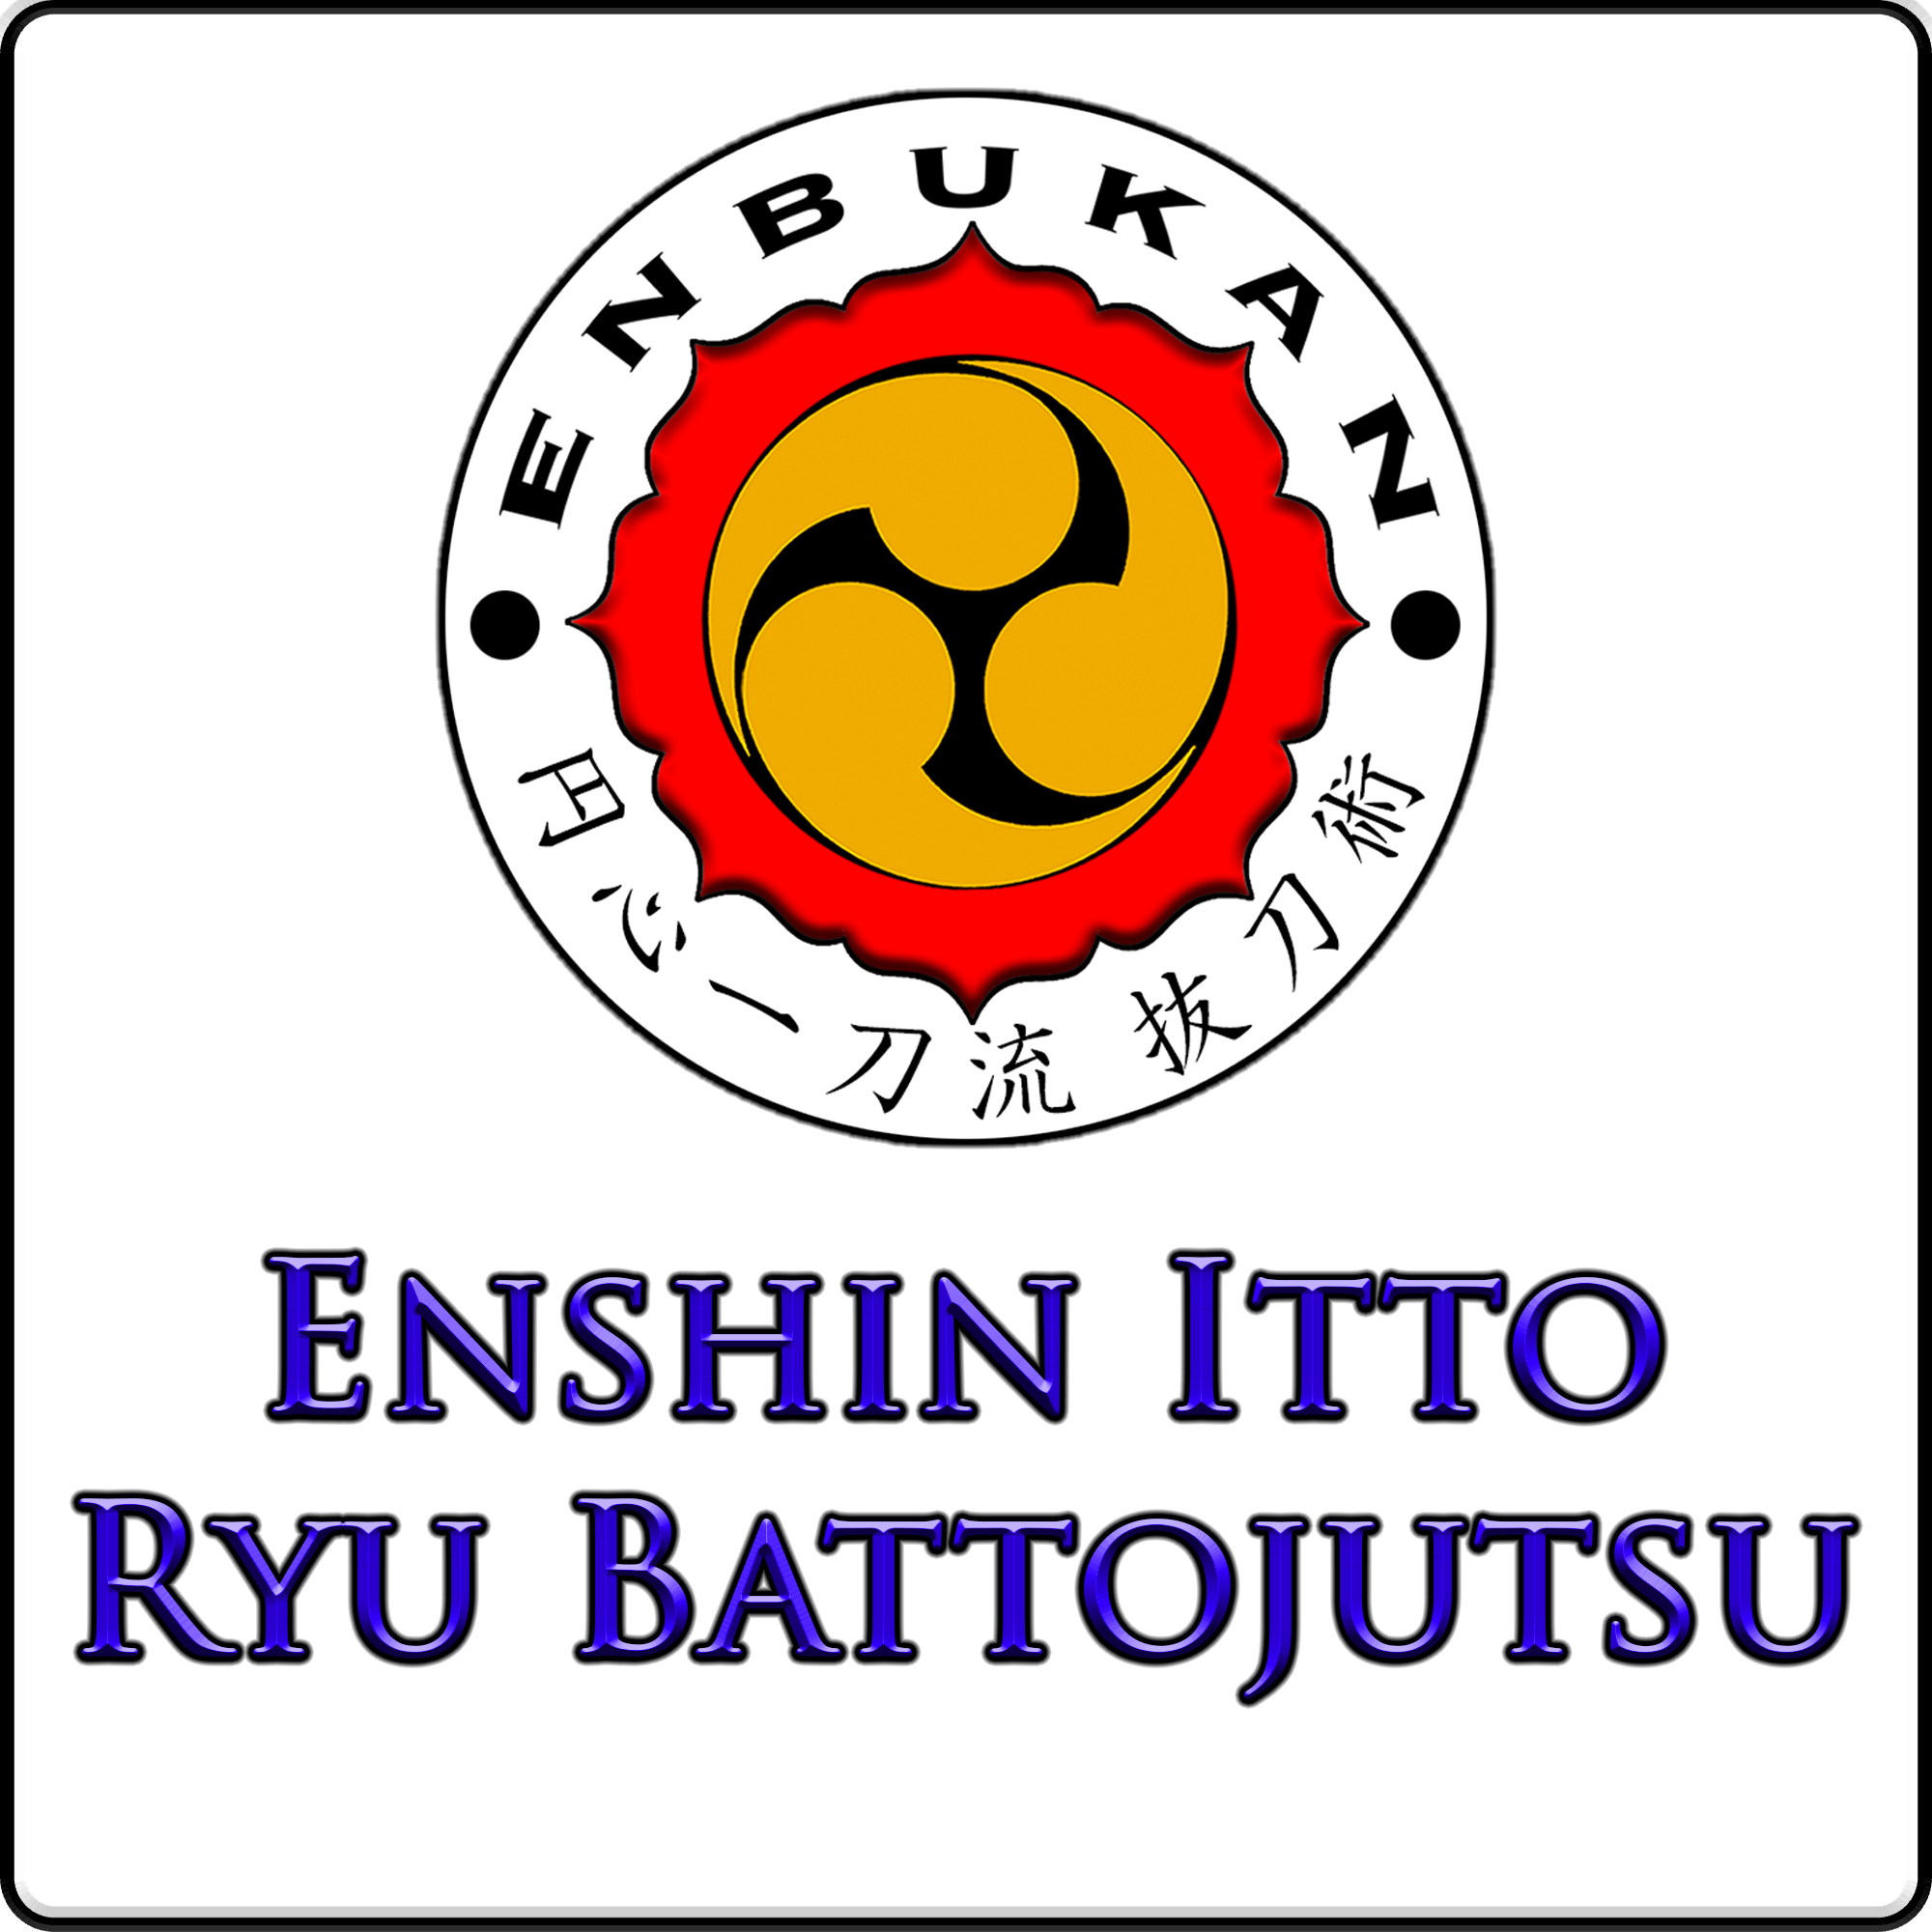 Enshin Itto Ryu Battojutsu